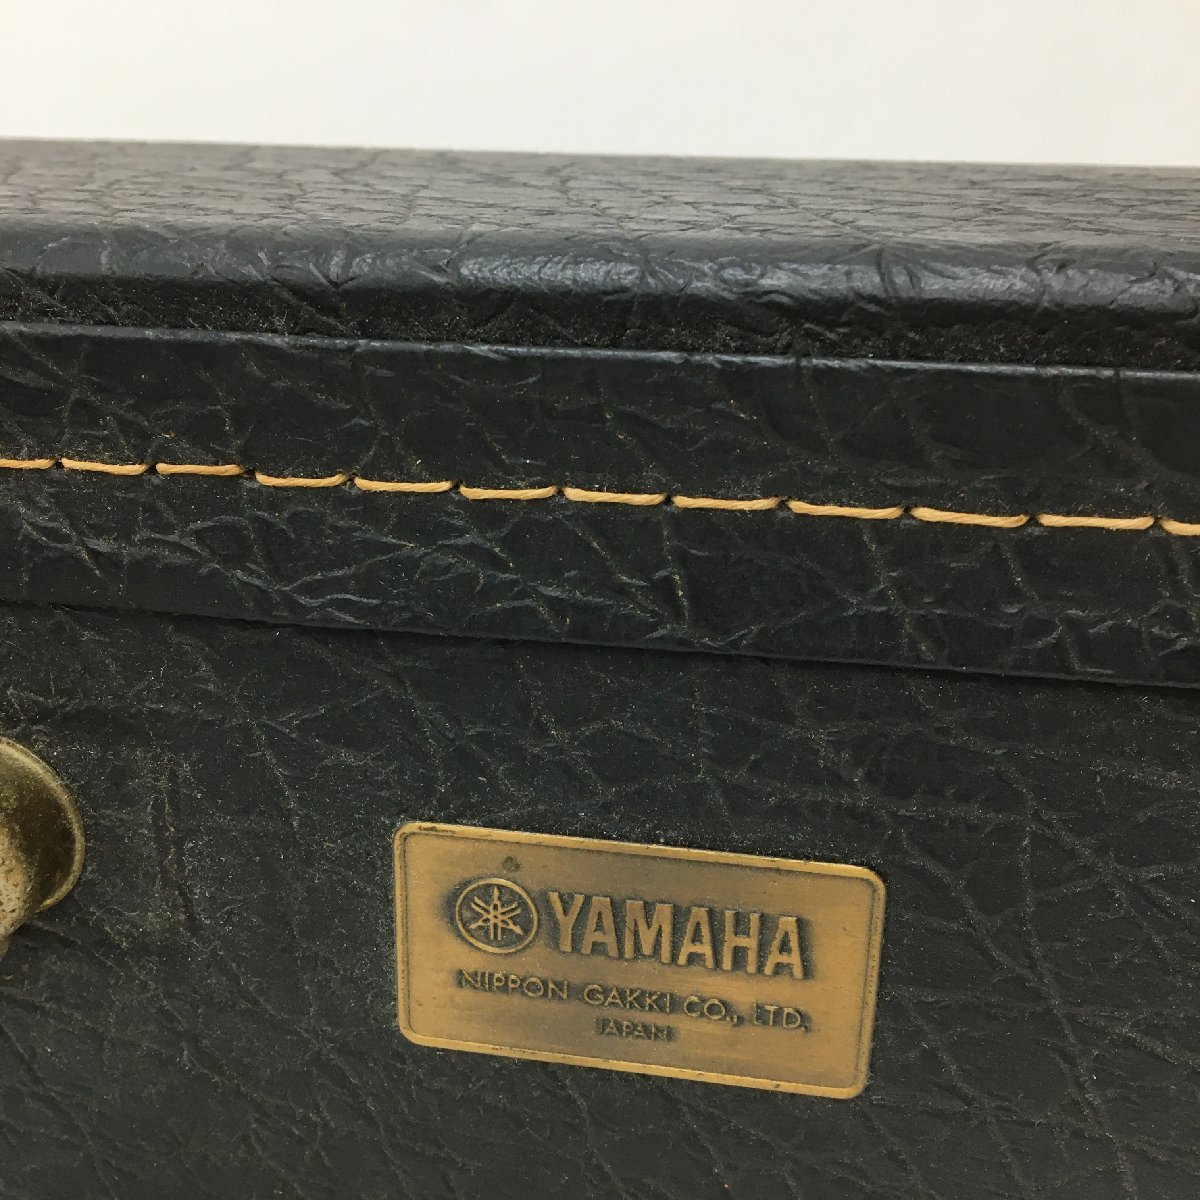 YAMAHA ギター GC-51 (No D411)1983年製 (ハードケース付きケースかなりのイタミあり) ユーズド_画像10